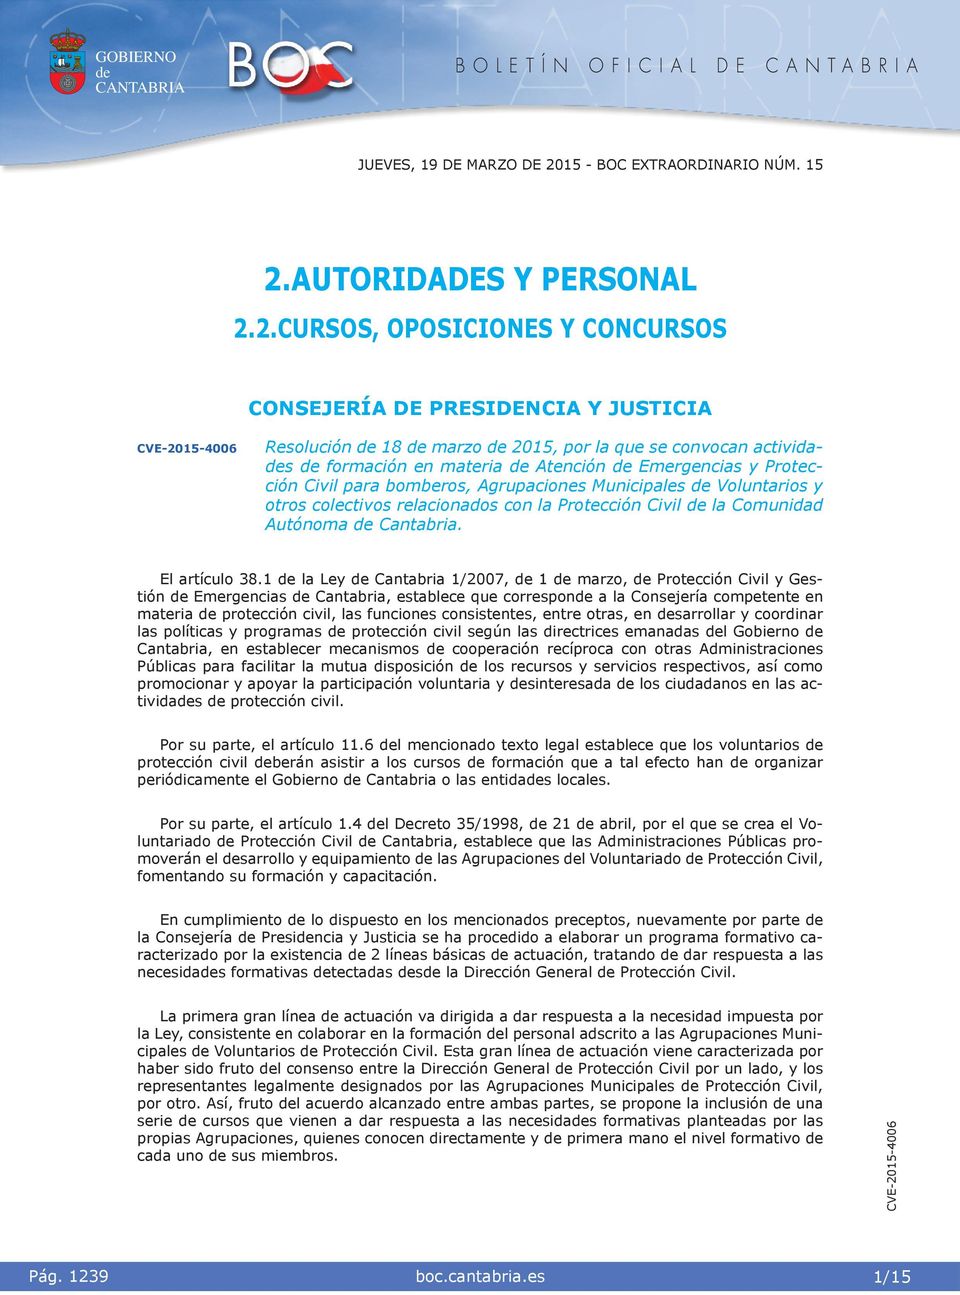 AUTORIDAS Y PERSONAL 2.